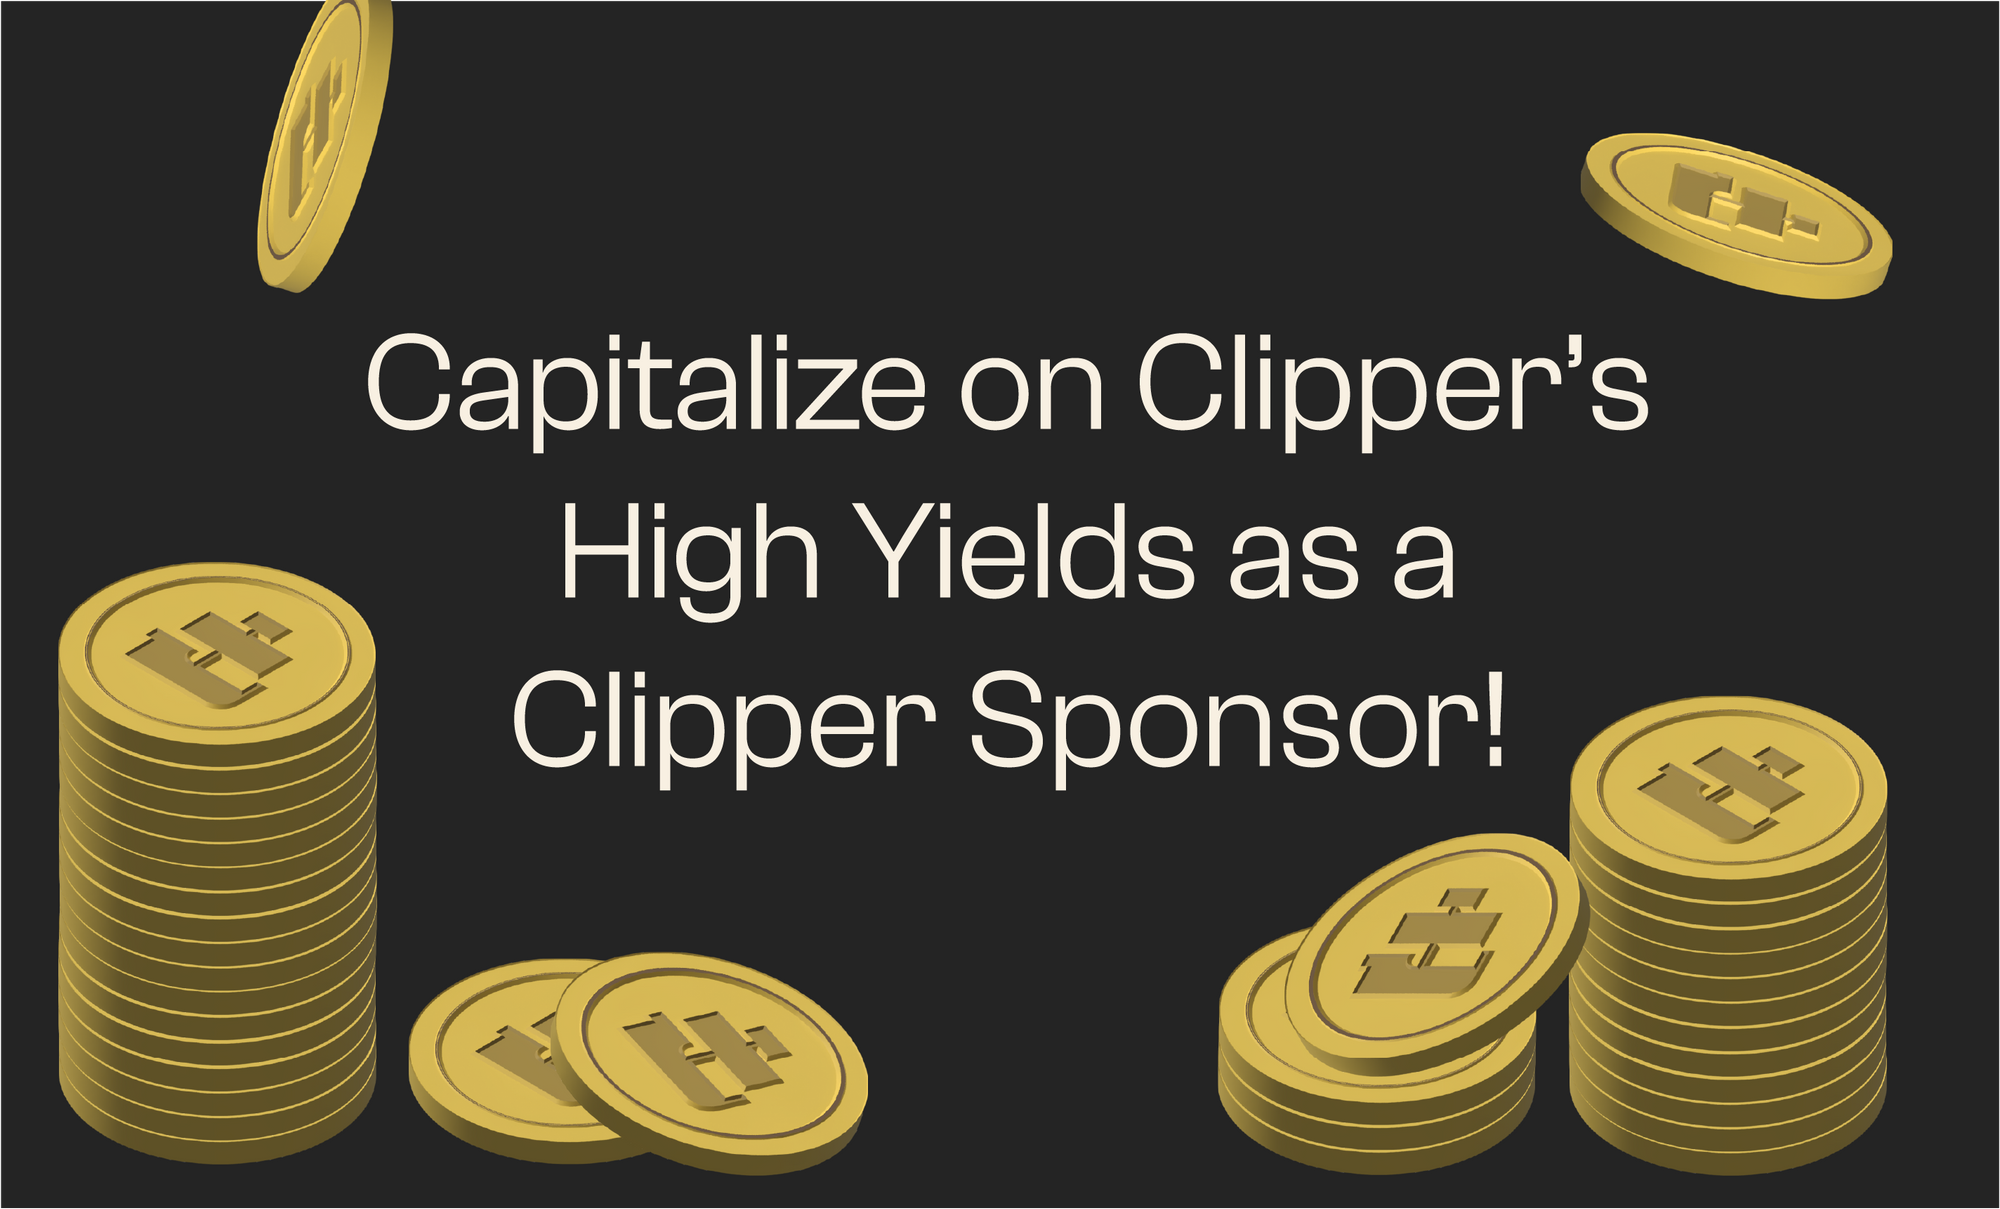 Clipper Sponsor Program